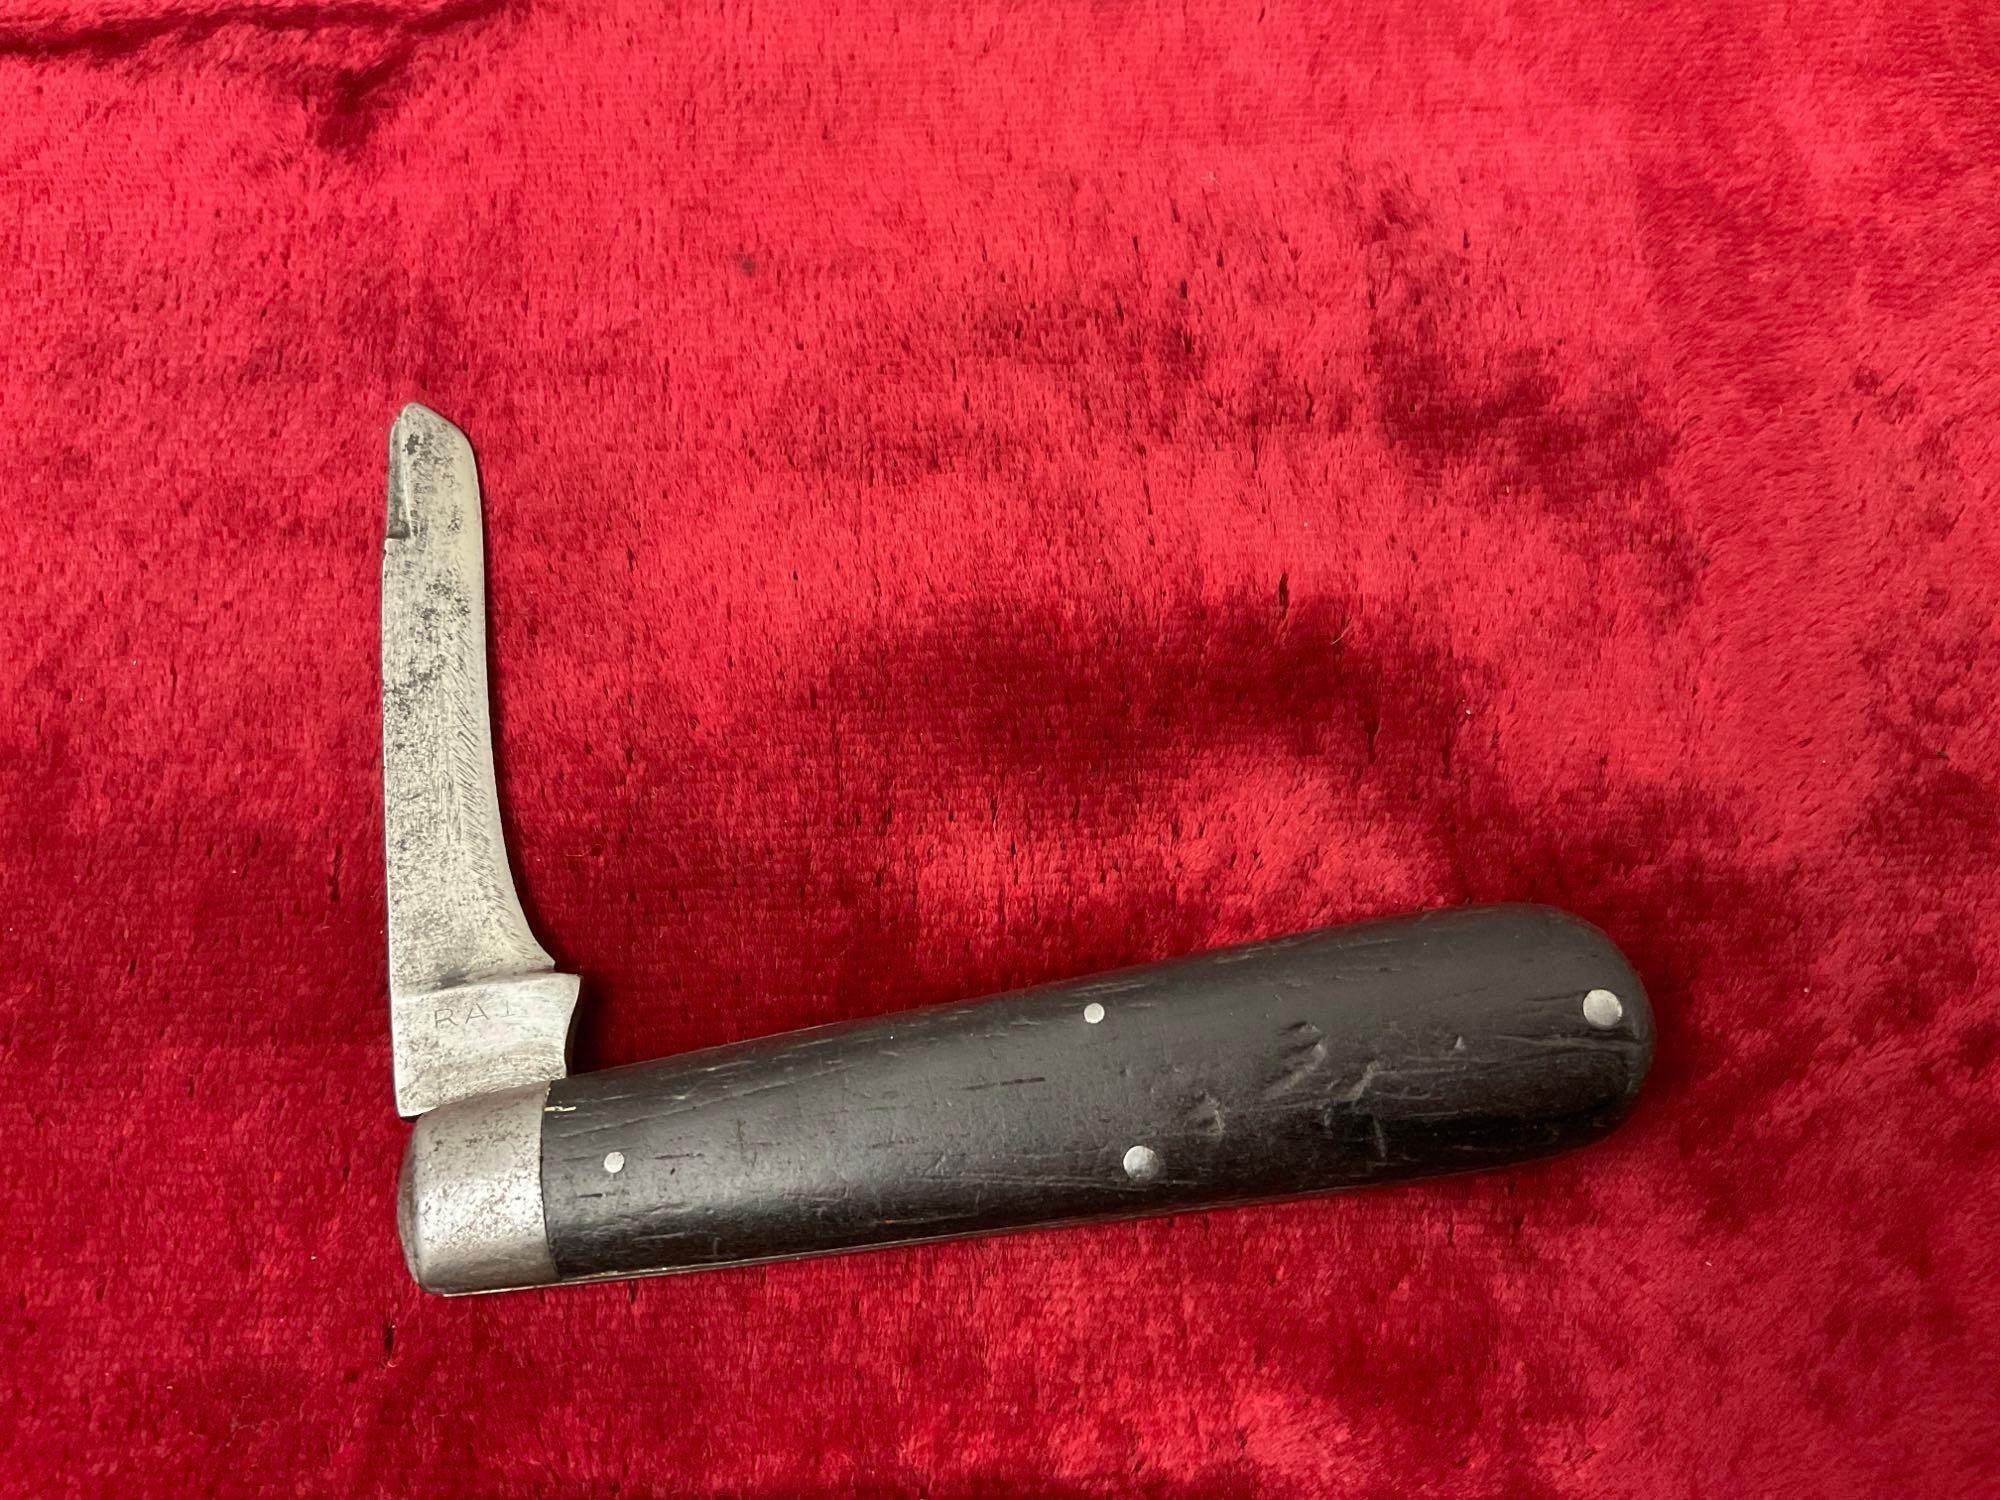 4x Folding Pocket Knives, Kabar 1179 Sodbuster, Italian Razor, Brazilian Tramontina, Rem. RA1